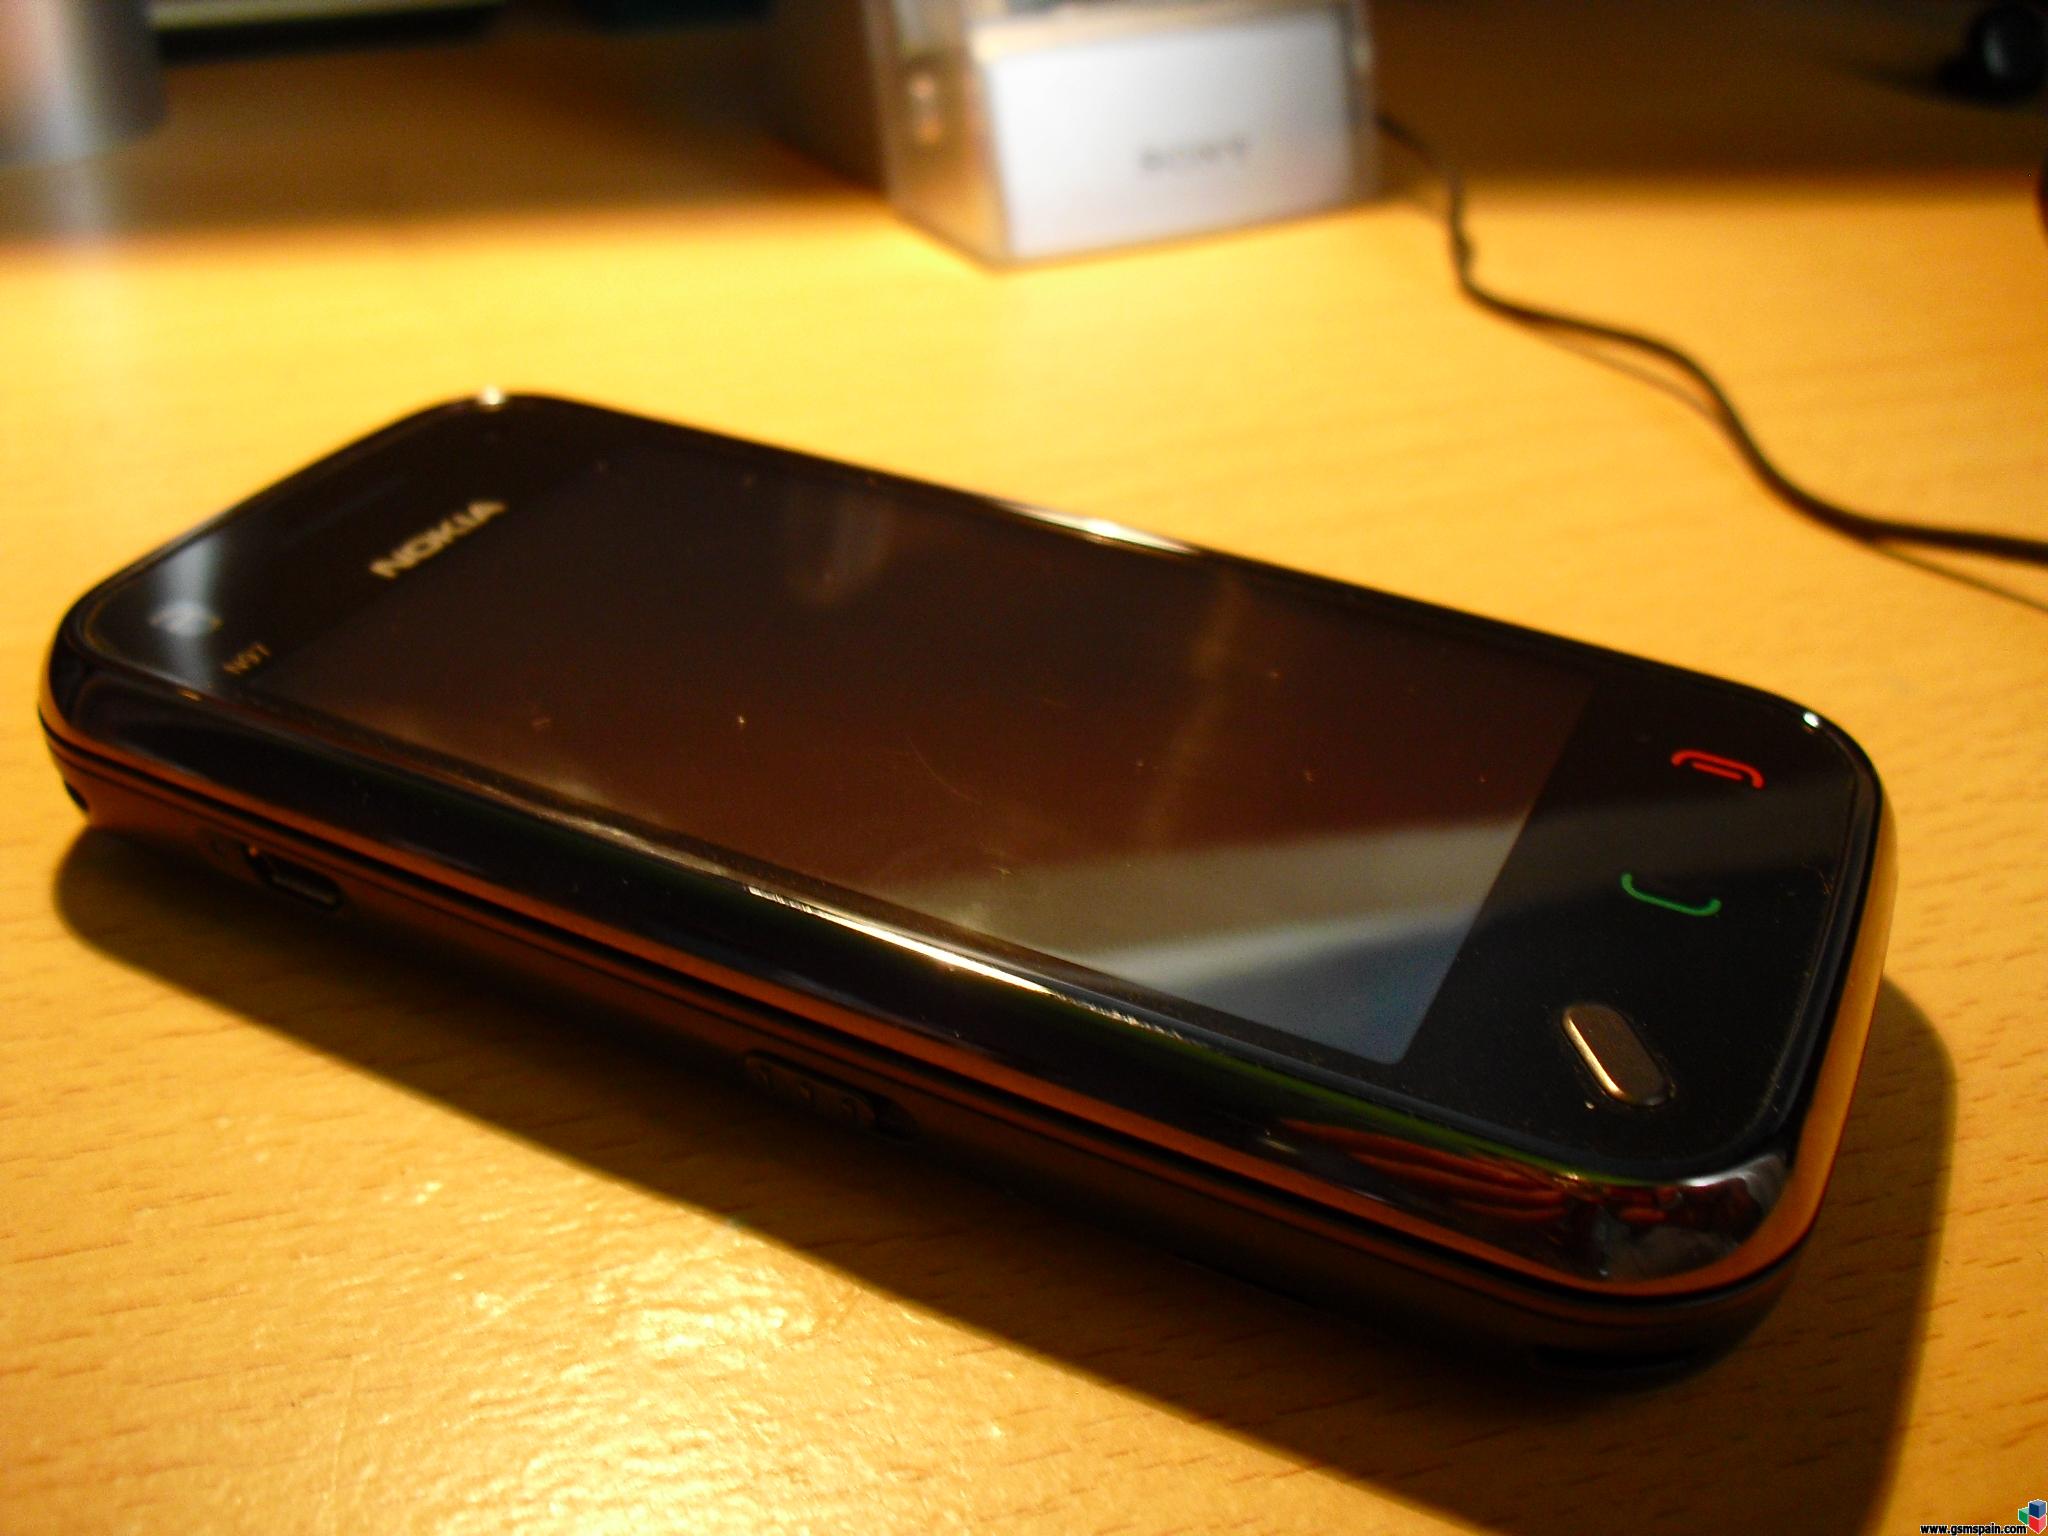 N97 mini (Vodafone)